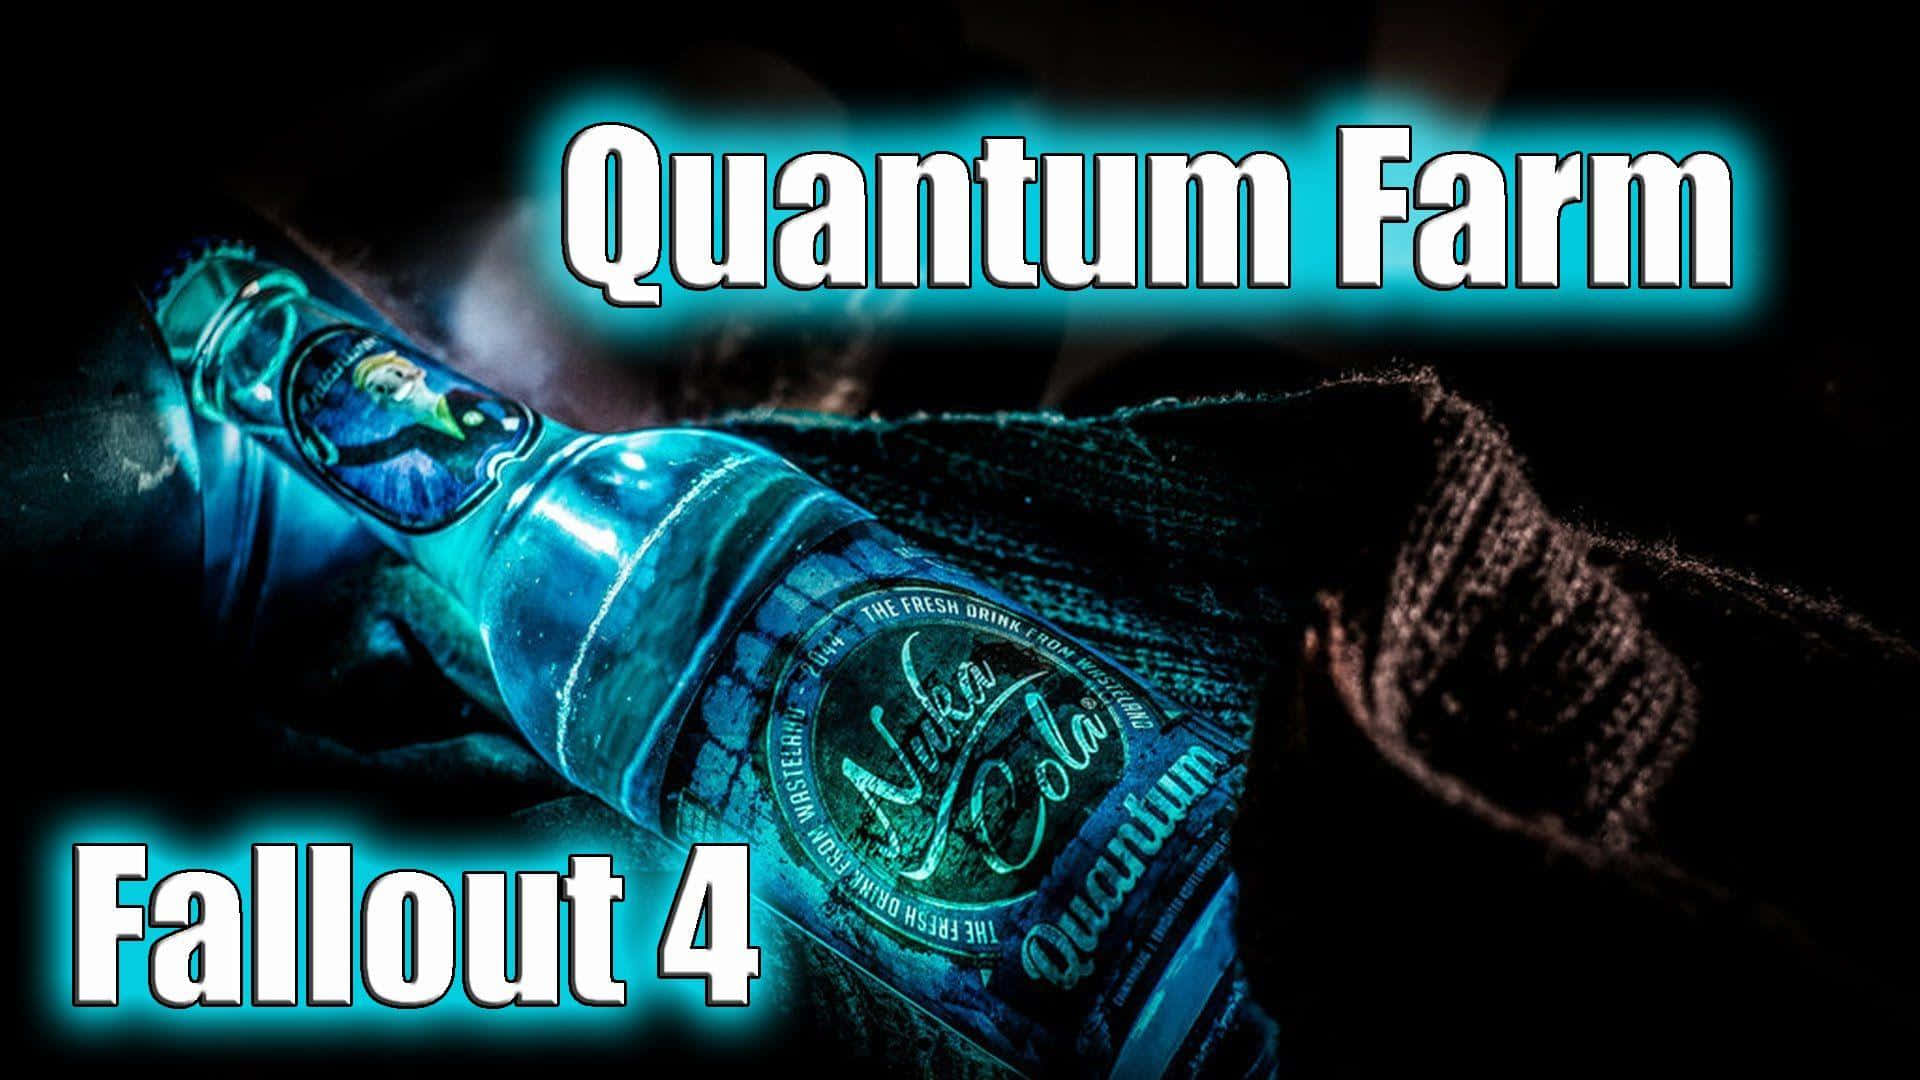 Quantumfarm Ist Ein Hintergrundbild Für Computer Oder Mobiltelefone, Das Vom Spiel Fallout 4 Inspiriert Ist. Wallpaper